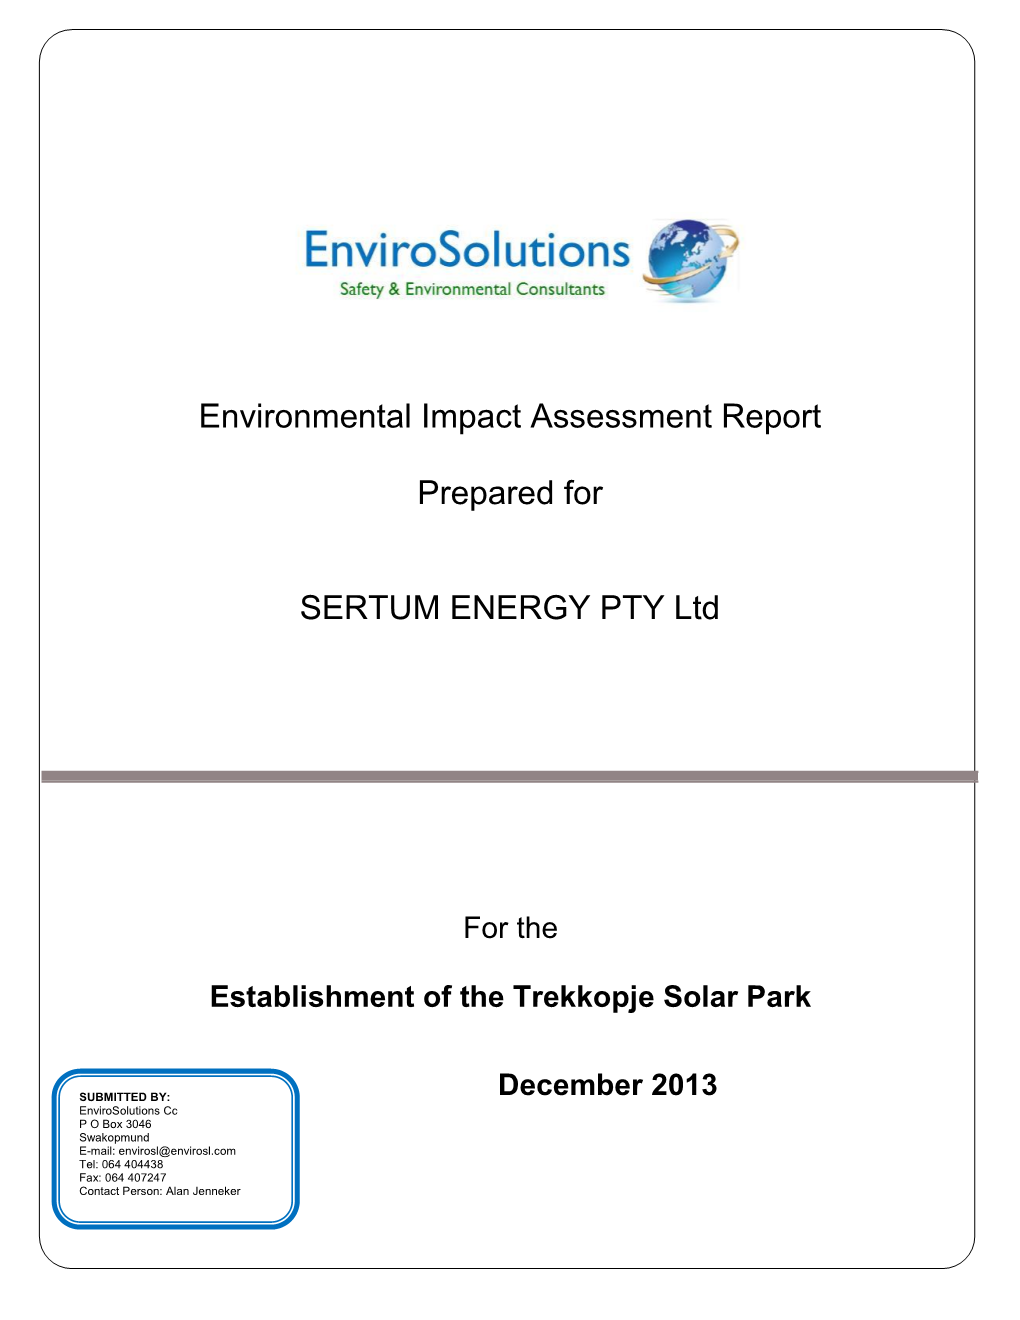 Environmental Impact Assessment Report Prepared for SERTUM